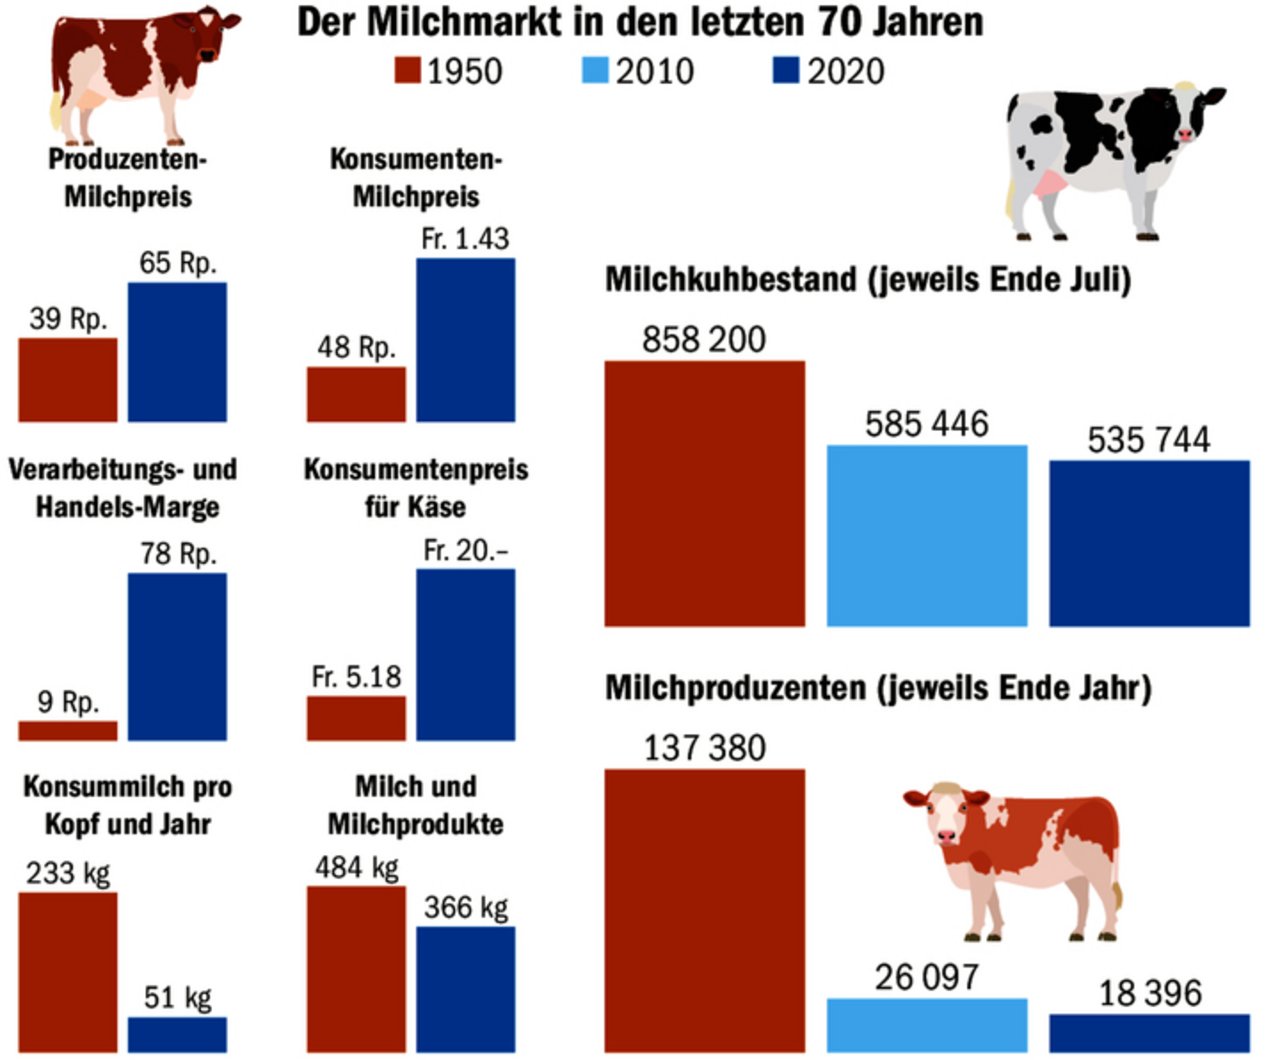 Der Milchmarkt im Wandel der Zeit: Die Zahl der Produzenten und der Milchkühe hat stark abgenommen, aber die Milchmenge bleibt konstant bei rund 3,4 Mio t.